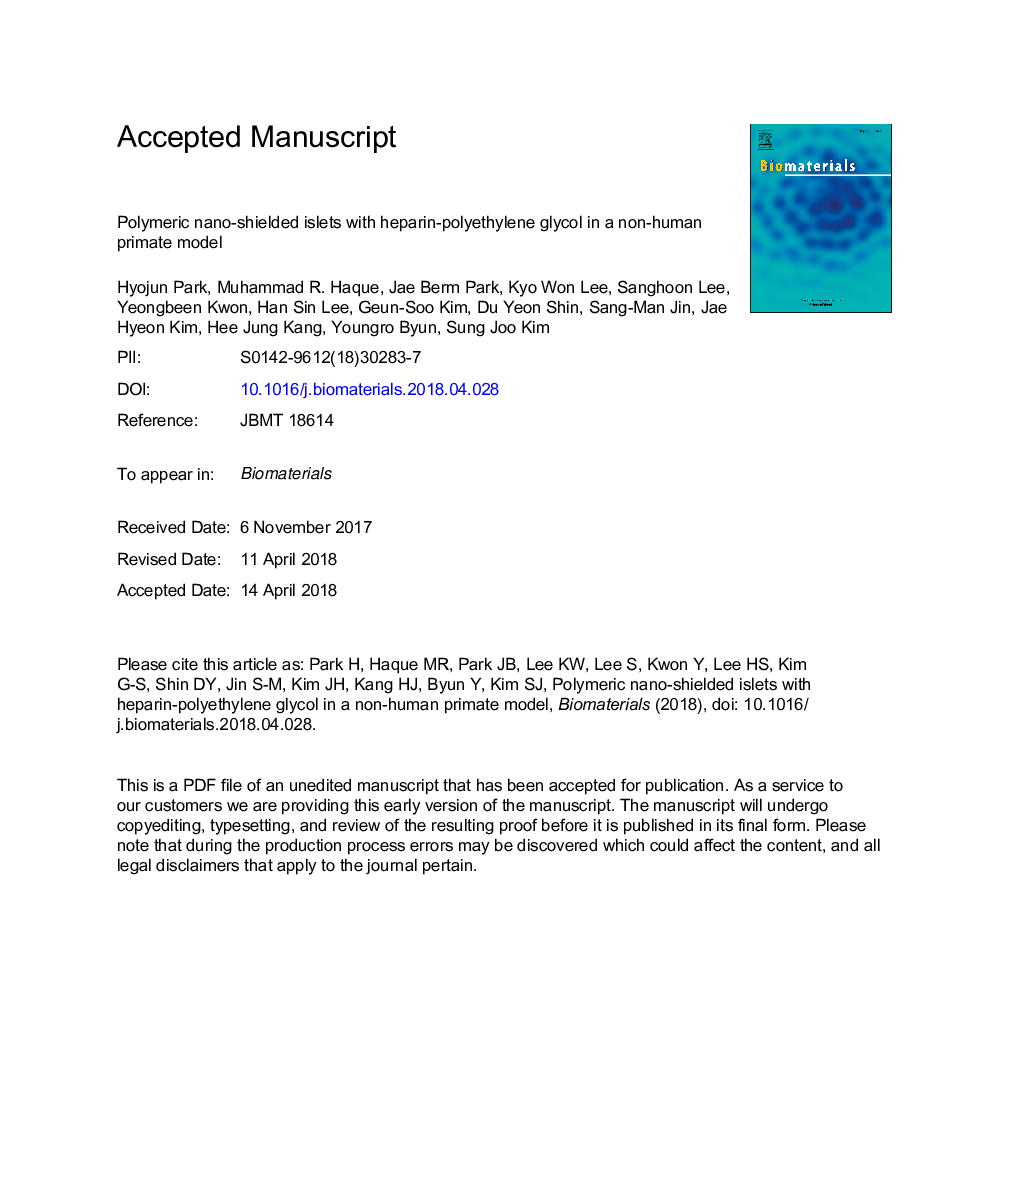 جزایر محافظ نانوذرات پلیمری با هپارین-پلی اتیلن گلیکول در یک مدل پریمات غیر انسانی 